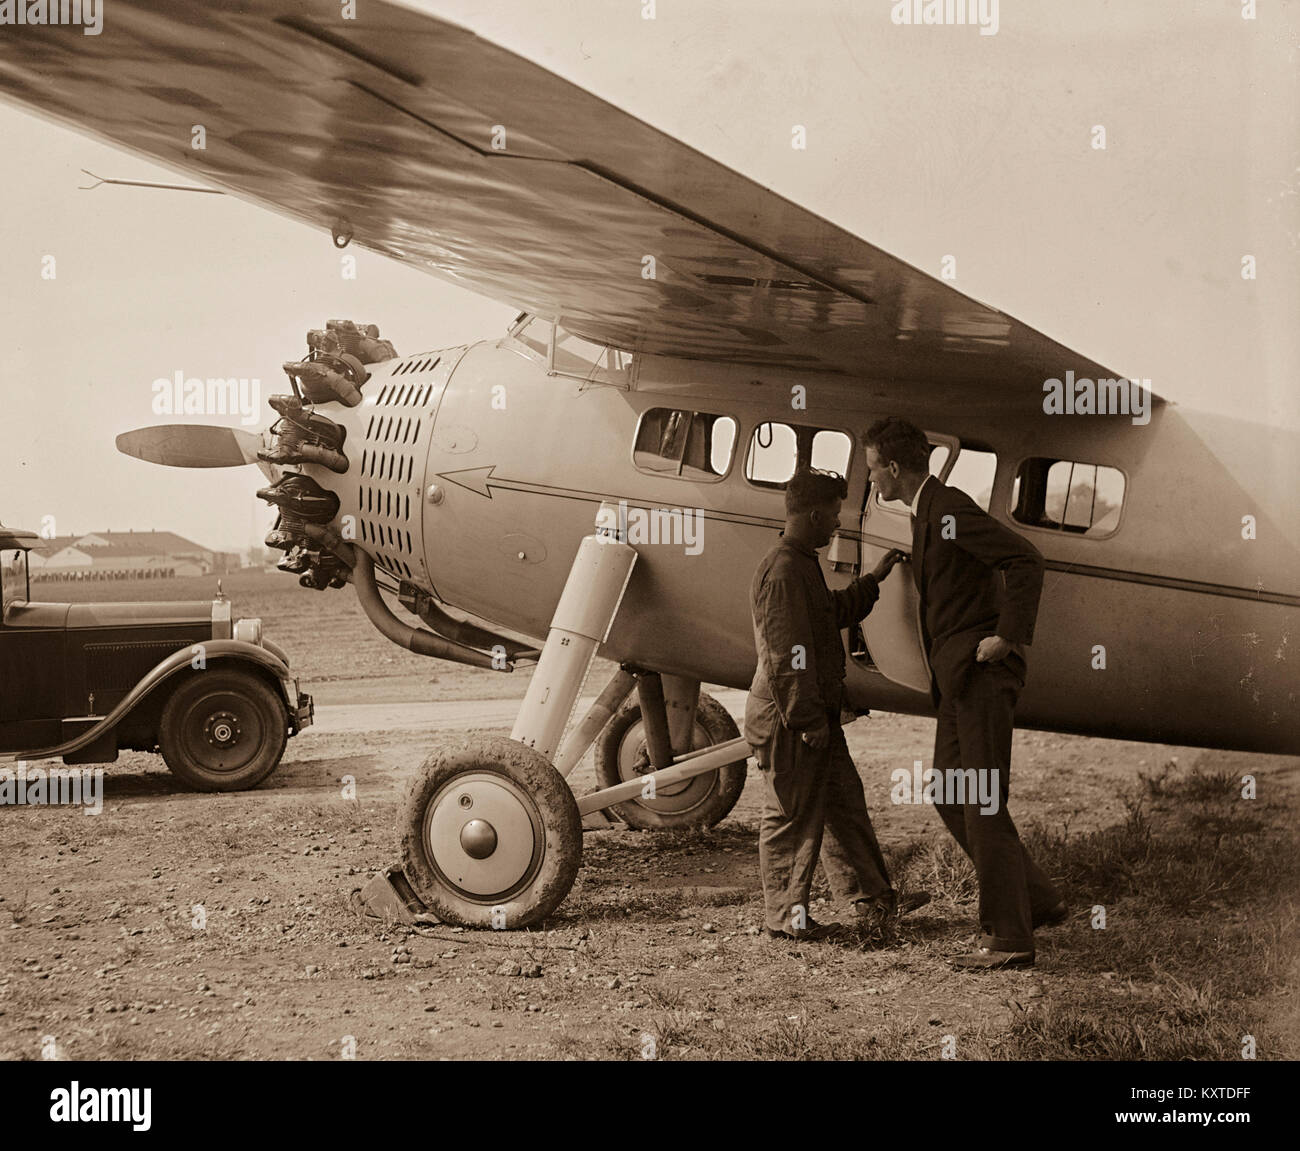 Charles A. Lindbergh Aviator und amerikanischen Helden. In den frühen Morgenstunden des Freitag, 20. Mai 1927, Lindbergh von Roosevelt Field über den Atlantik nach Paris, Frankreich. Seine eindecker war mit 450 US-Gallonen Kraftstoff, die wiederholt belastet wurde die Kraftstoffleitung Blockierung zu vermeiden geladen. Das Flugzeug wog ungefähr 2.710 lb, und der Start wurde durch einen schlammigen, regen-getränkten Landebahn behindert. Lindbergh's monoplan wurde durch ein J-5C Wright Wirbelwind Sternmotor angetrieben und Geschwindigkeit sehr langsam während der 7:52 Uhr Abflug, aber gelöscht Telefonleitungen ganz am Ende des Feldes. Stockfoto